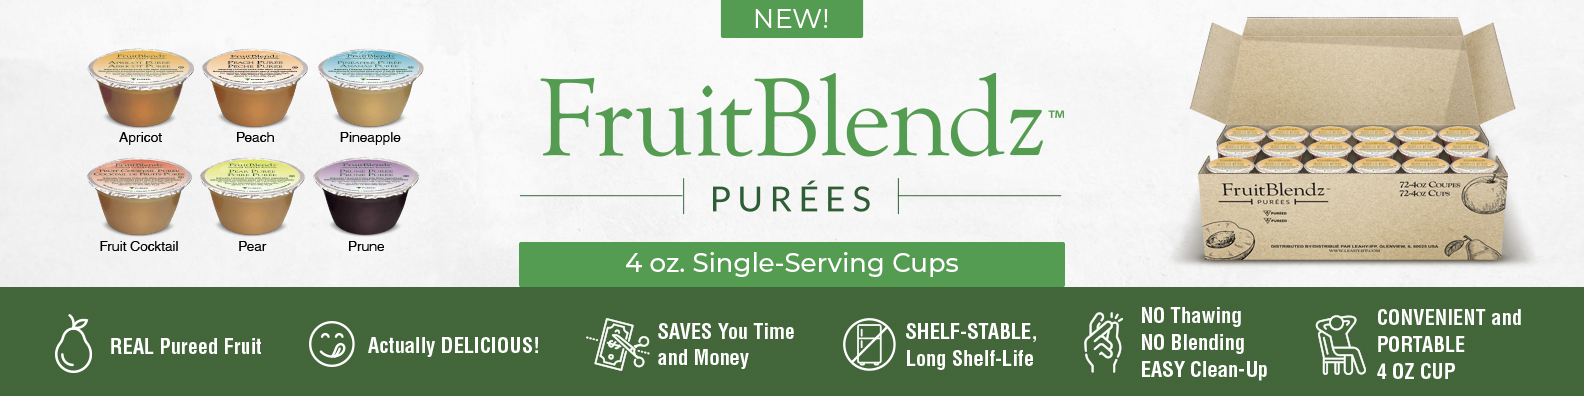 Fruitblendz Purees 4oz Single Serving Cups